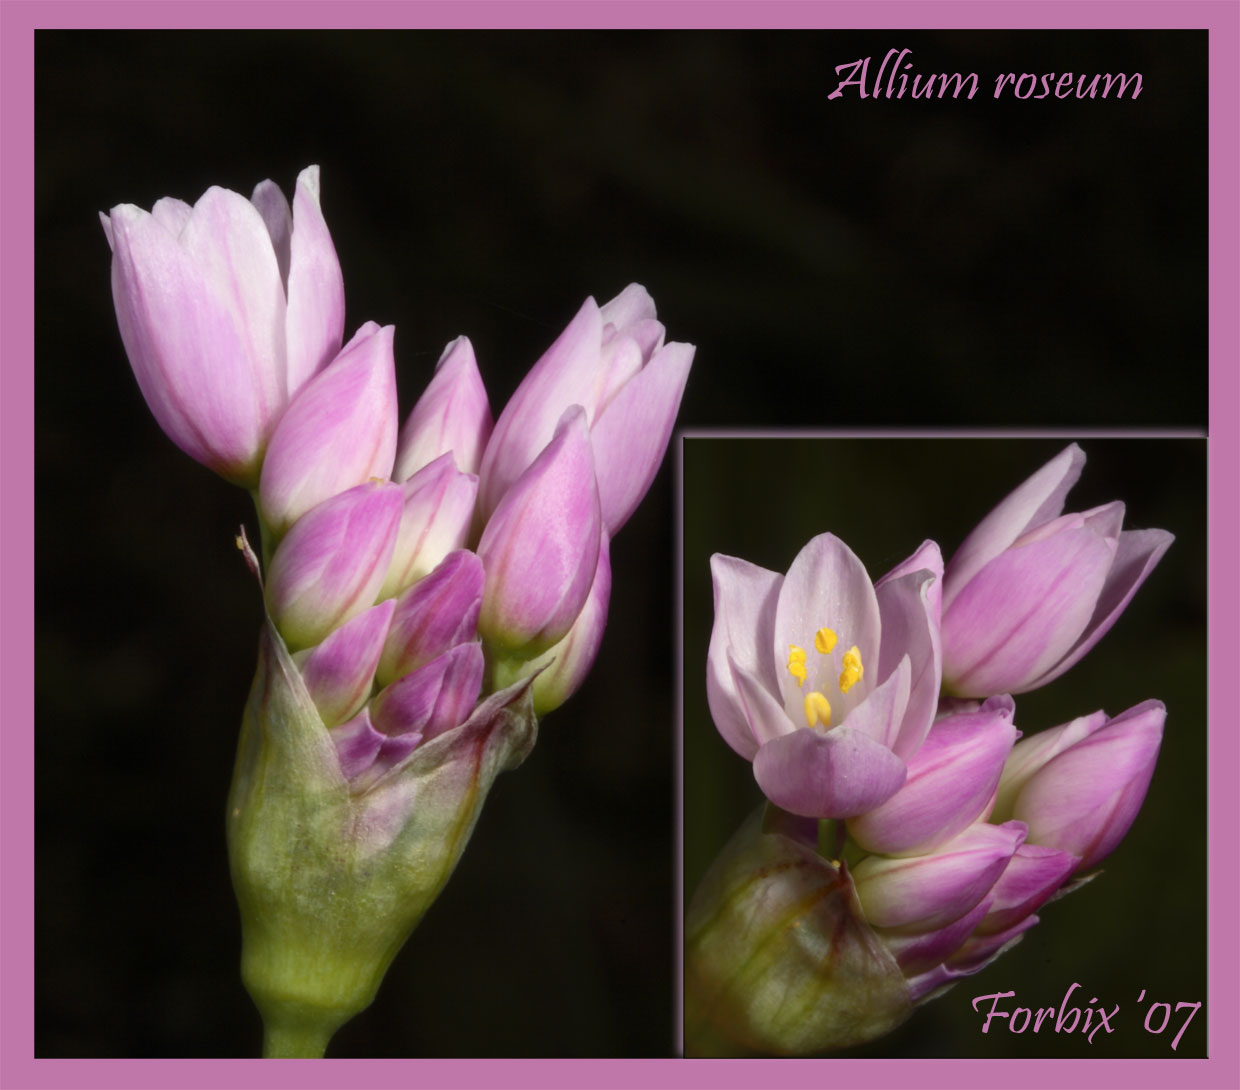 Allium roseum L. / Aglio roseo